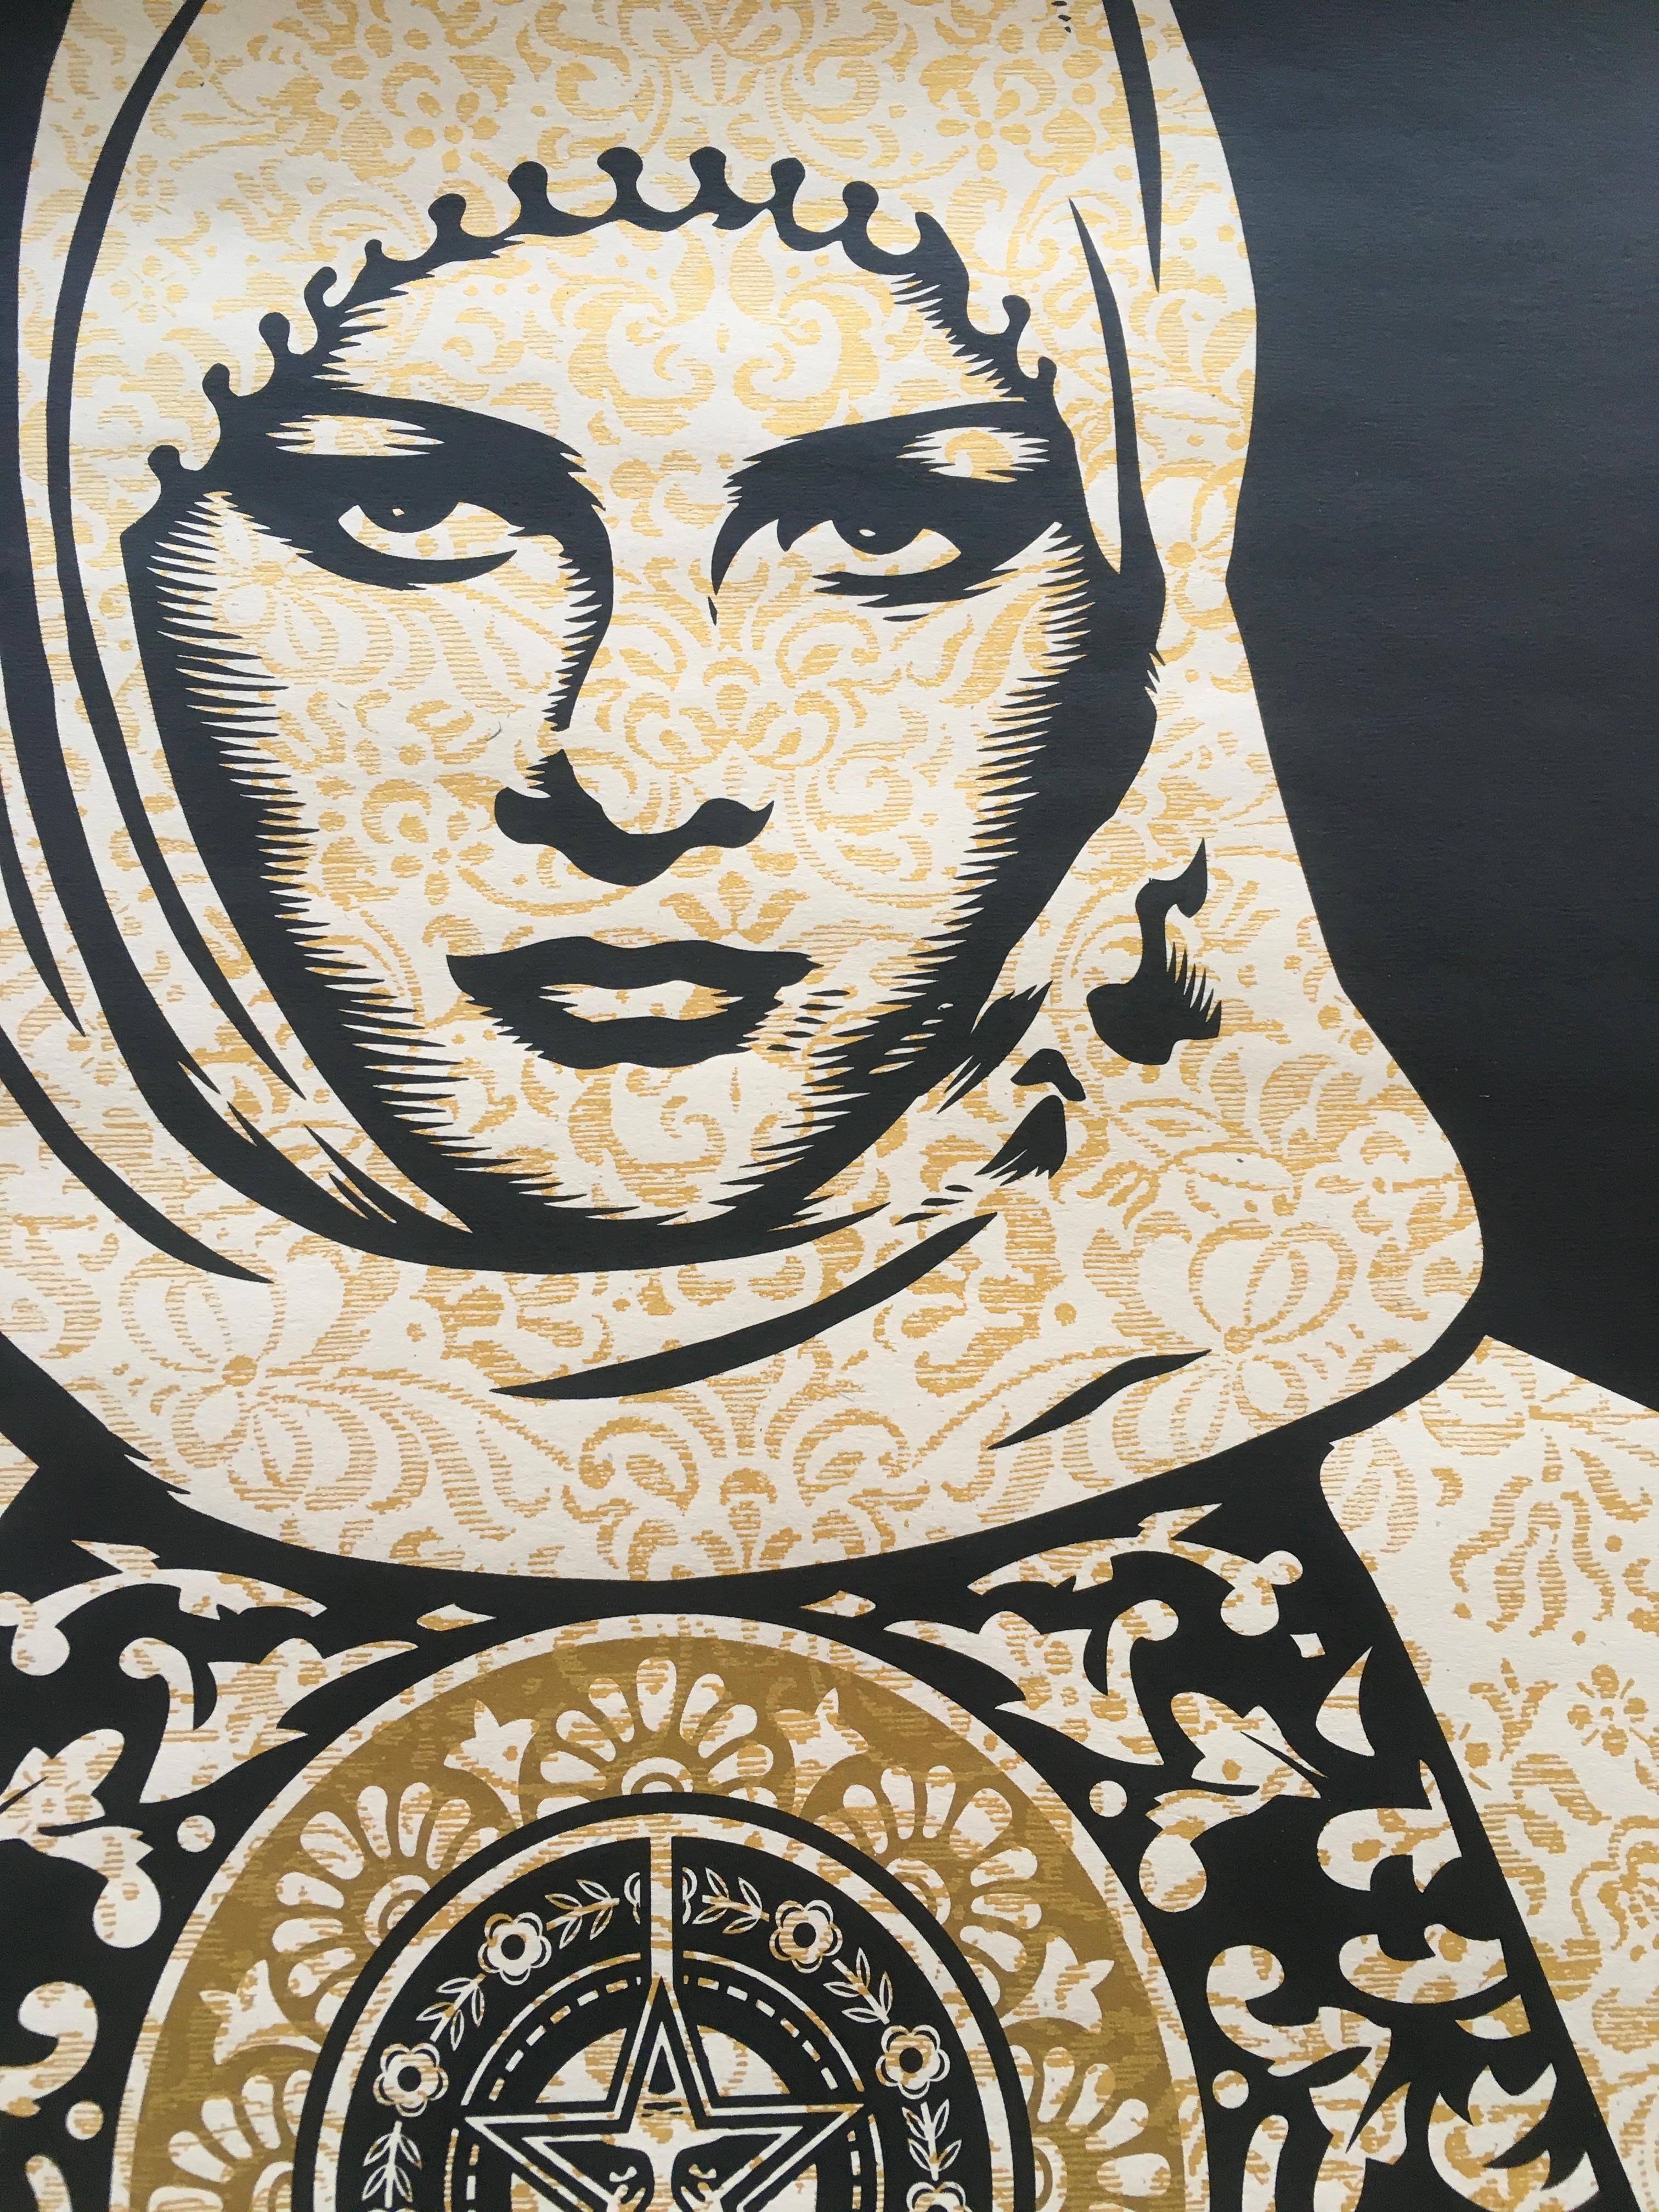 Arab Woman Gold (2007), sérigraphie, édition limitée de 300 exemplaires - Art urbain Print par Shepard Fairey